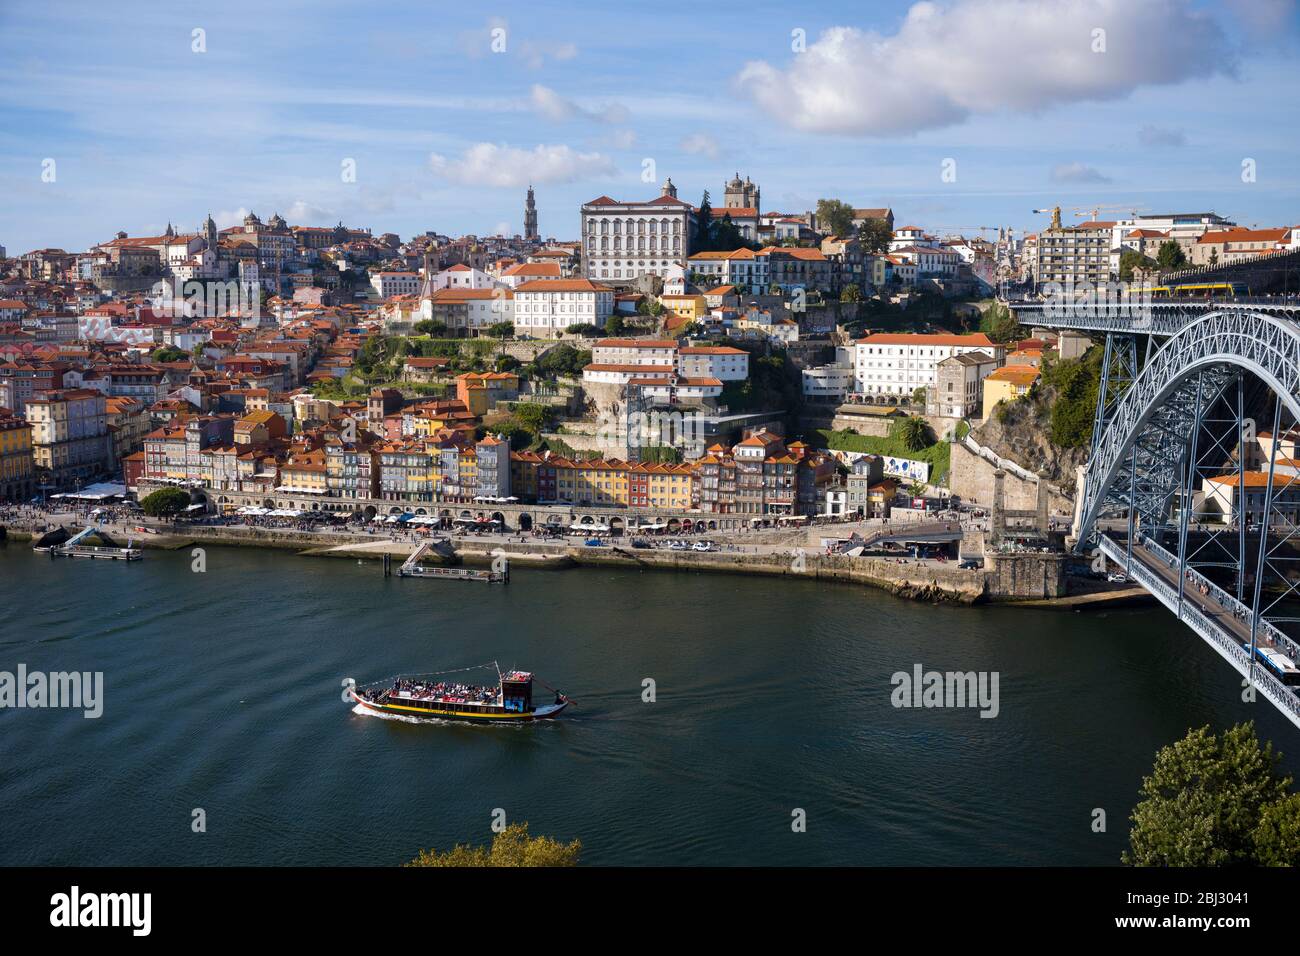 Rabelo puerto barcaza del vino y el Ponte de Dom Luis I - puente de arco de metal sobre el río Duero que conecta Porto con V|la Nova de Gaia, Portugal Foto de stock